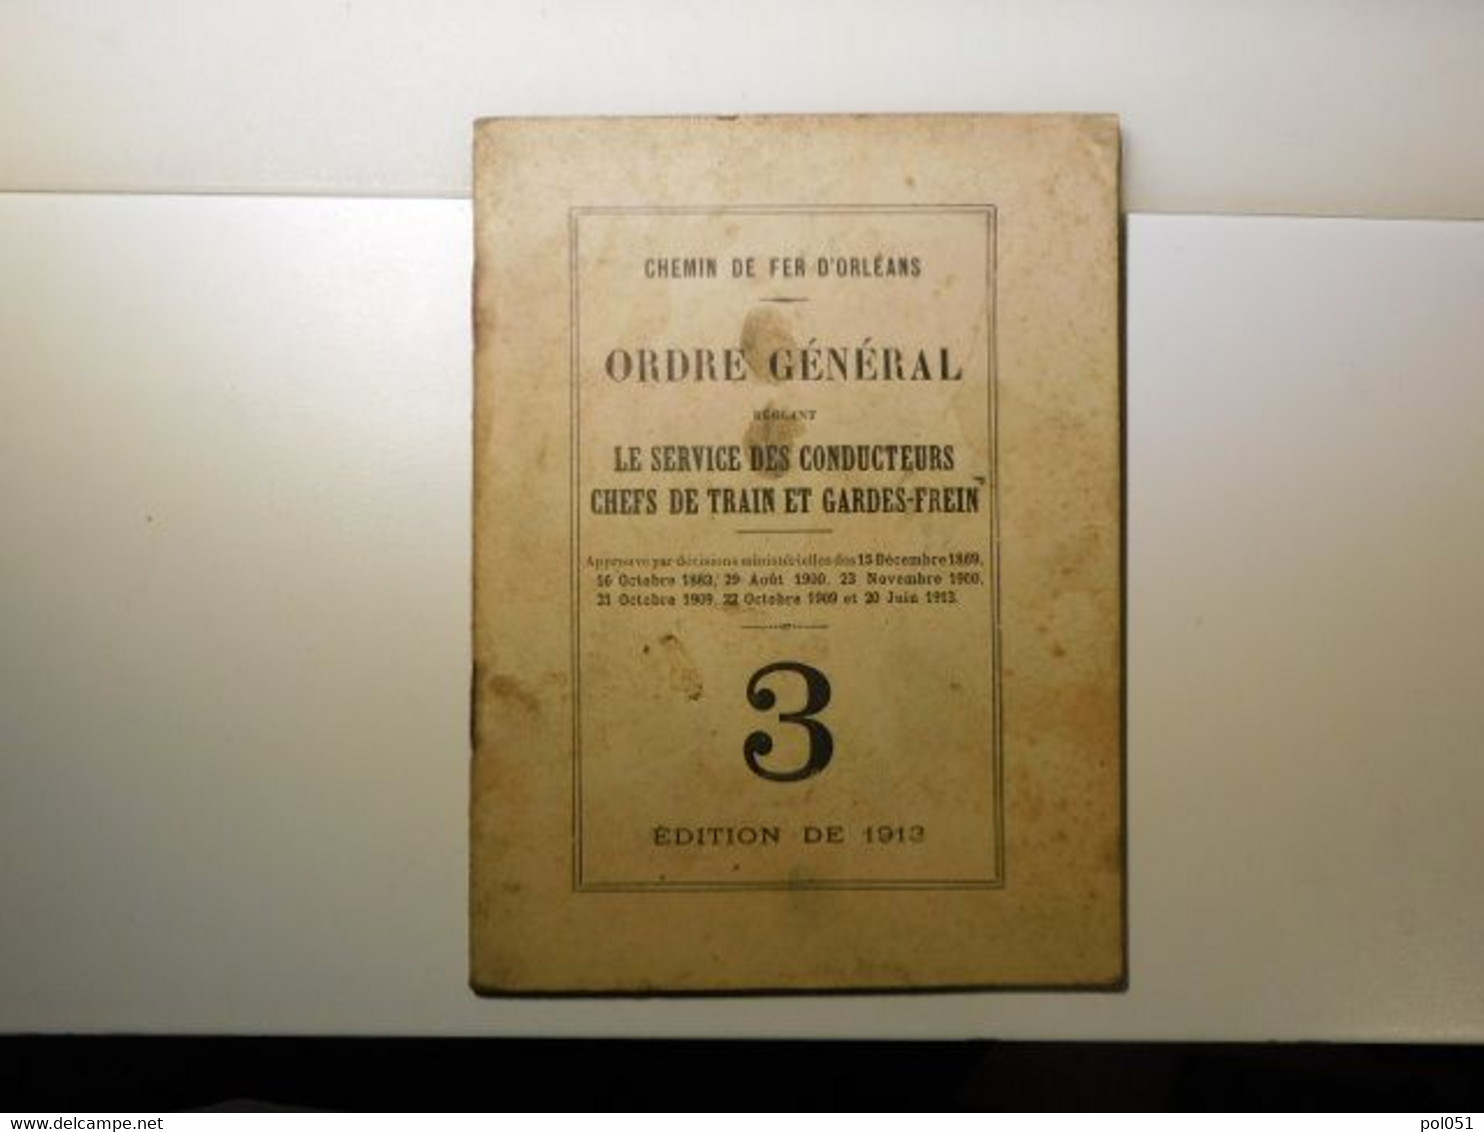 CHEMIN DE FER DE PARIS ORLEANS - ORDRE GENERAL - Le Service Des Conducteurs 3 1913 D'Orléans - Matériel Et Accessoires